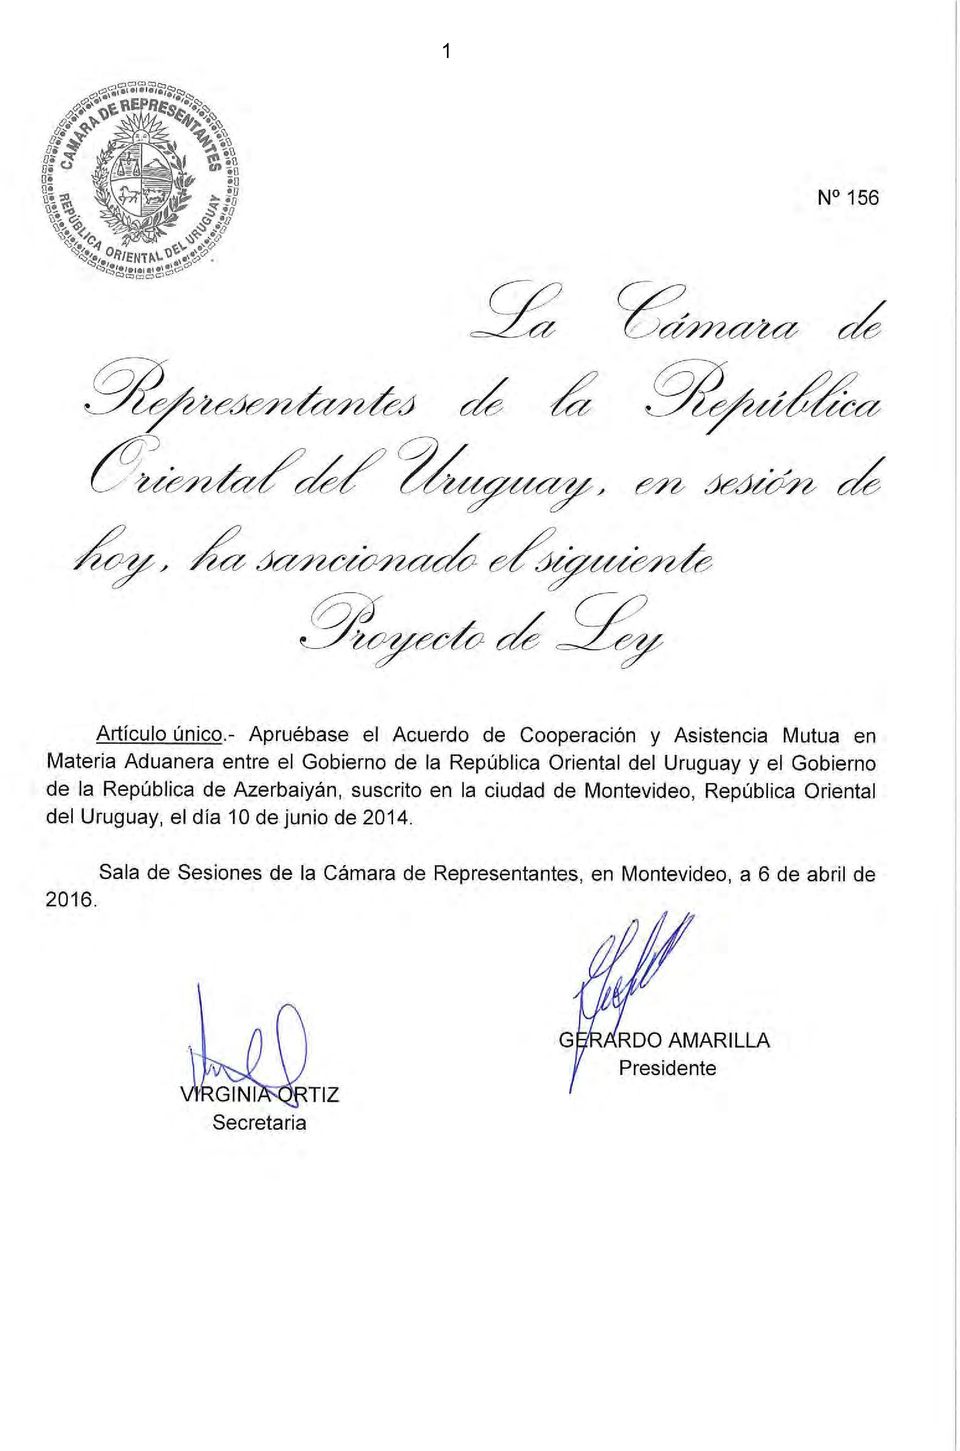 Oriental del Uruguay y el Gobierno de la República de Azerbaiyán, suscrito en la ciudad de Montevideo, República